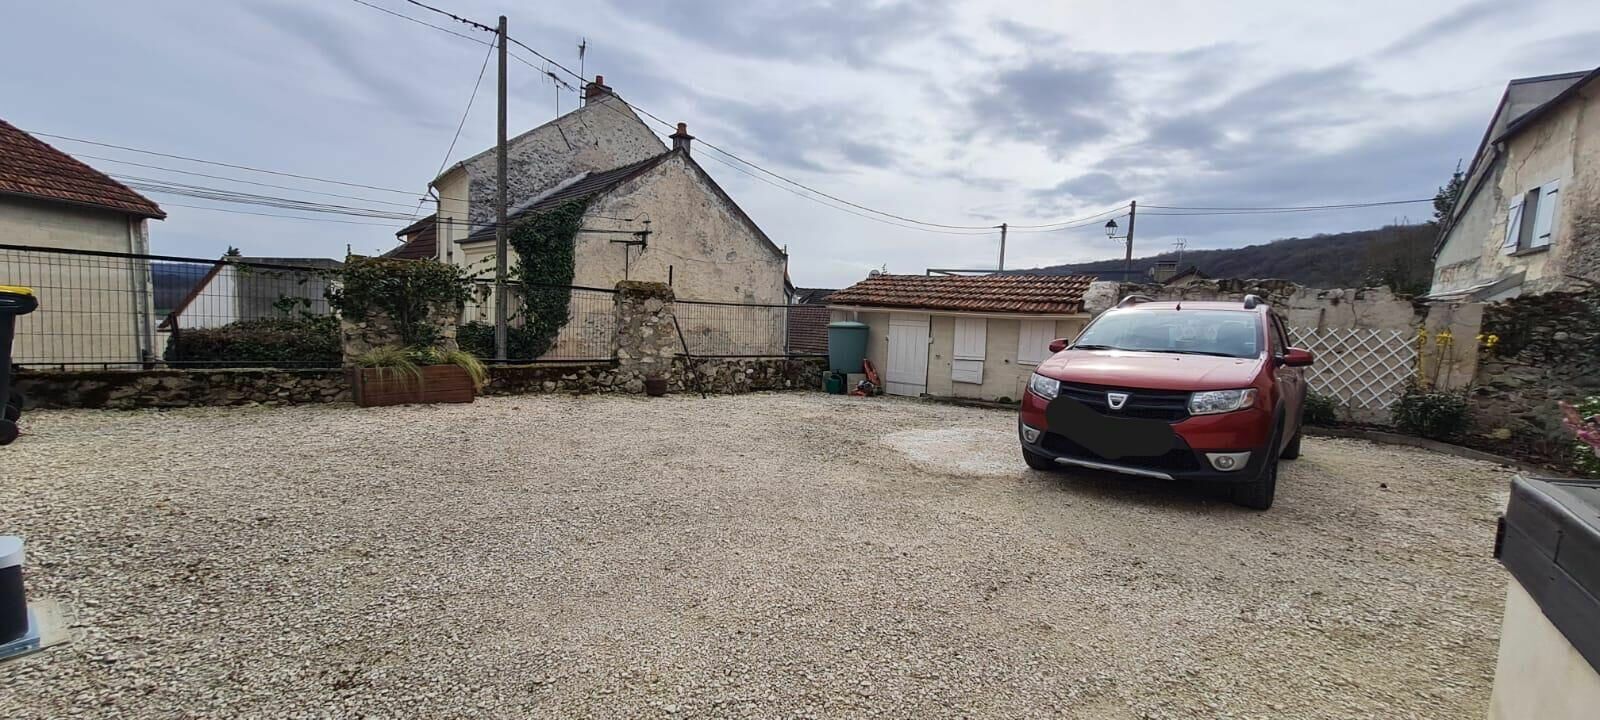 Maison à vendre 2 105m2 à Saâcy-sur-Marne vignette-13